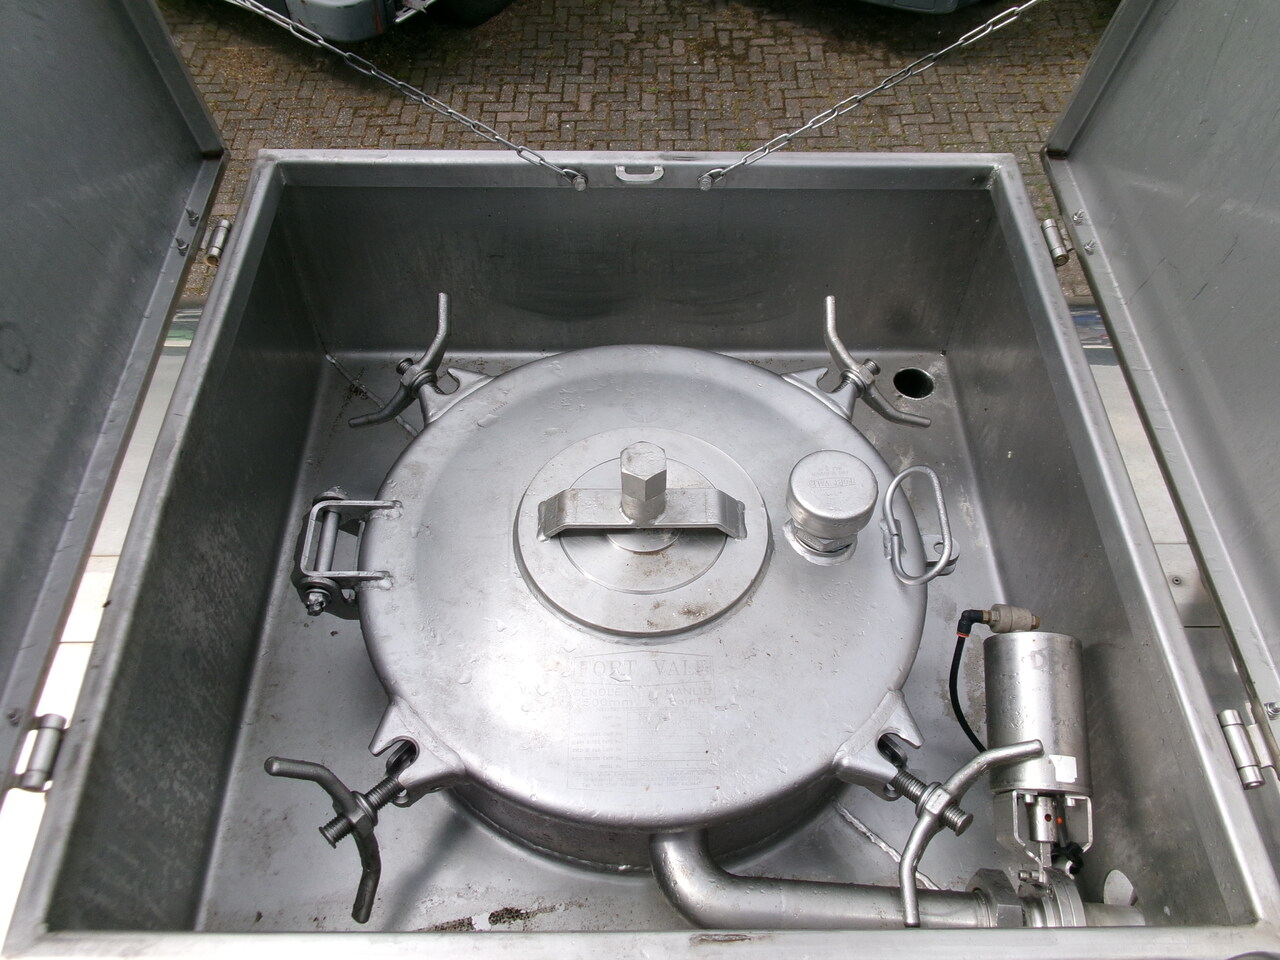 Poluprikolica cisterna za prijevoz hrane Crossland Food tank inox 30 m3 / 1 comp: slika Poluprikolica cisterna za prijevoz hrane Crossland Food tank inox 30 m3 / 1 comp